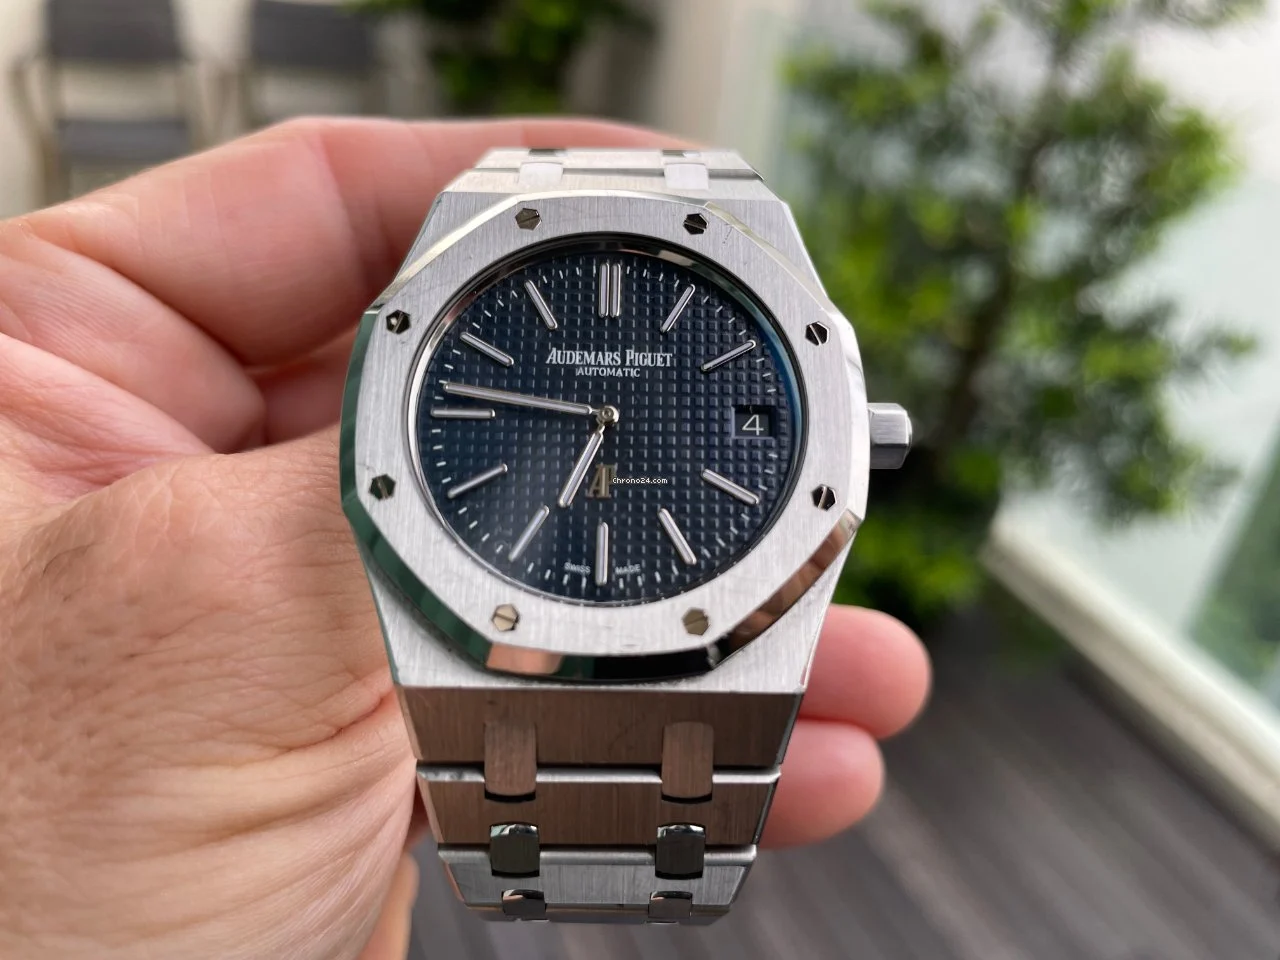 Audemars Piguet First Watch Brand to Replace Stolen Timepieces ...